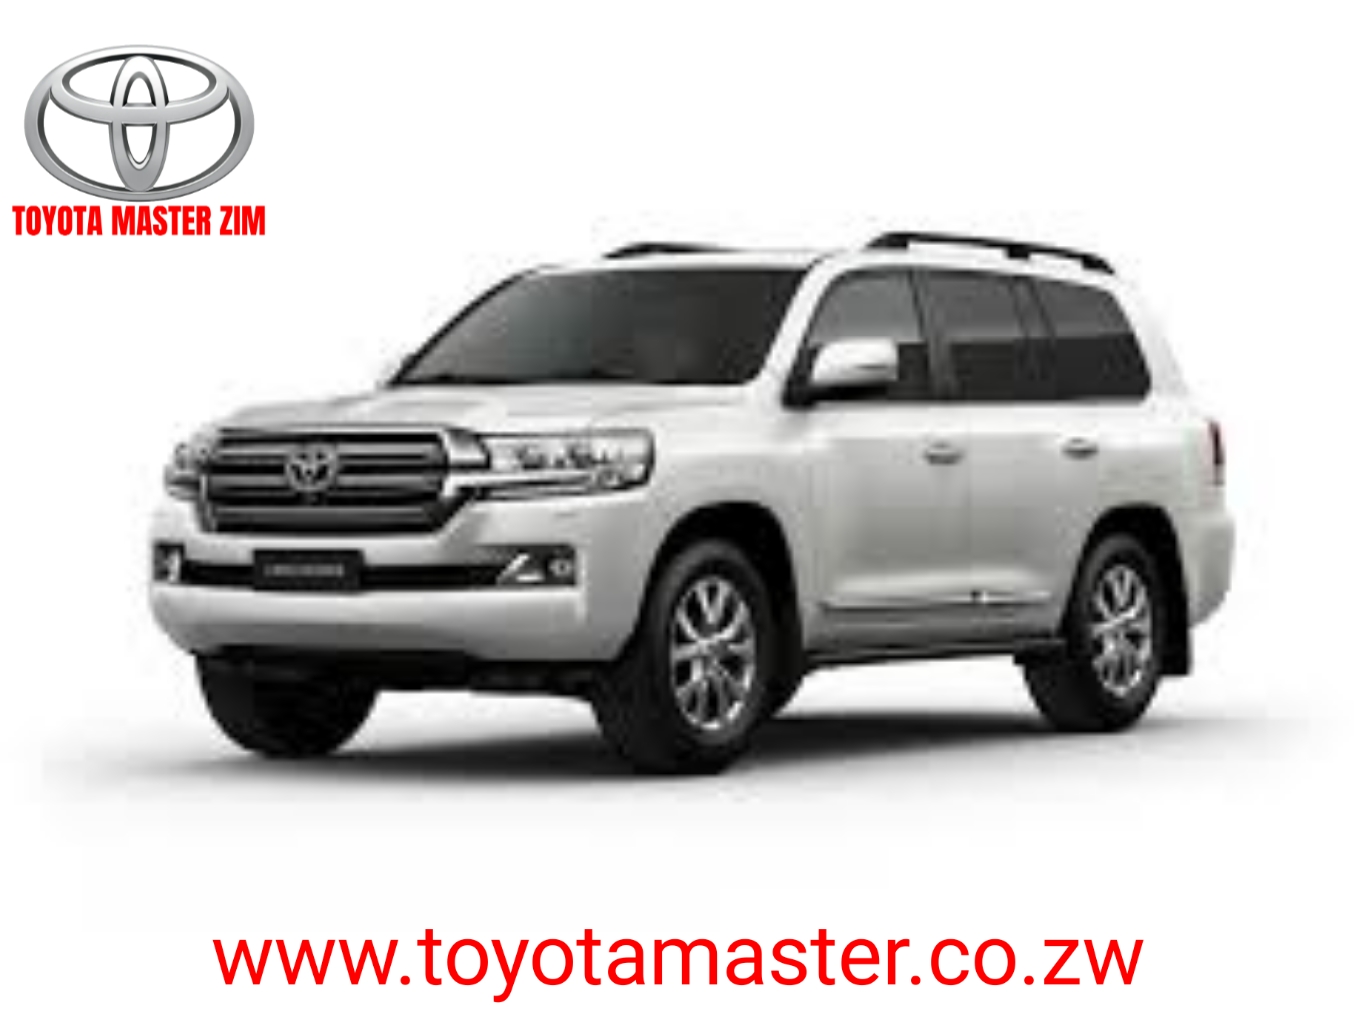 Toyota Zimbabwe Aptitude Test